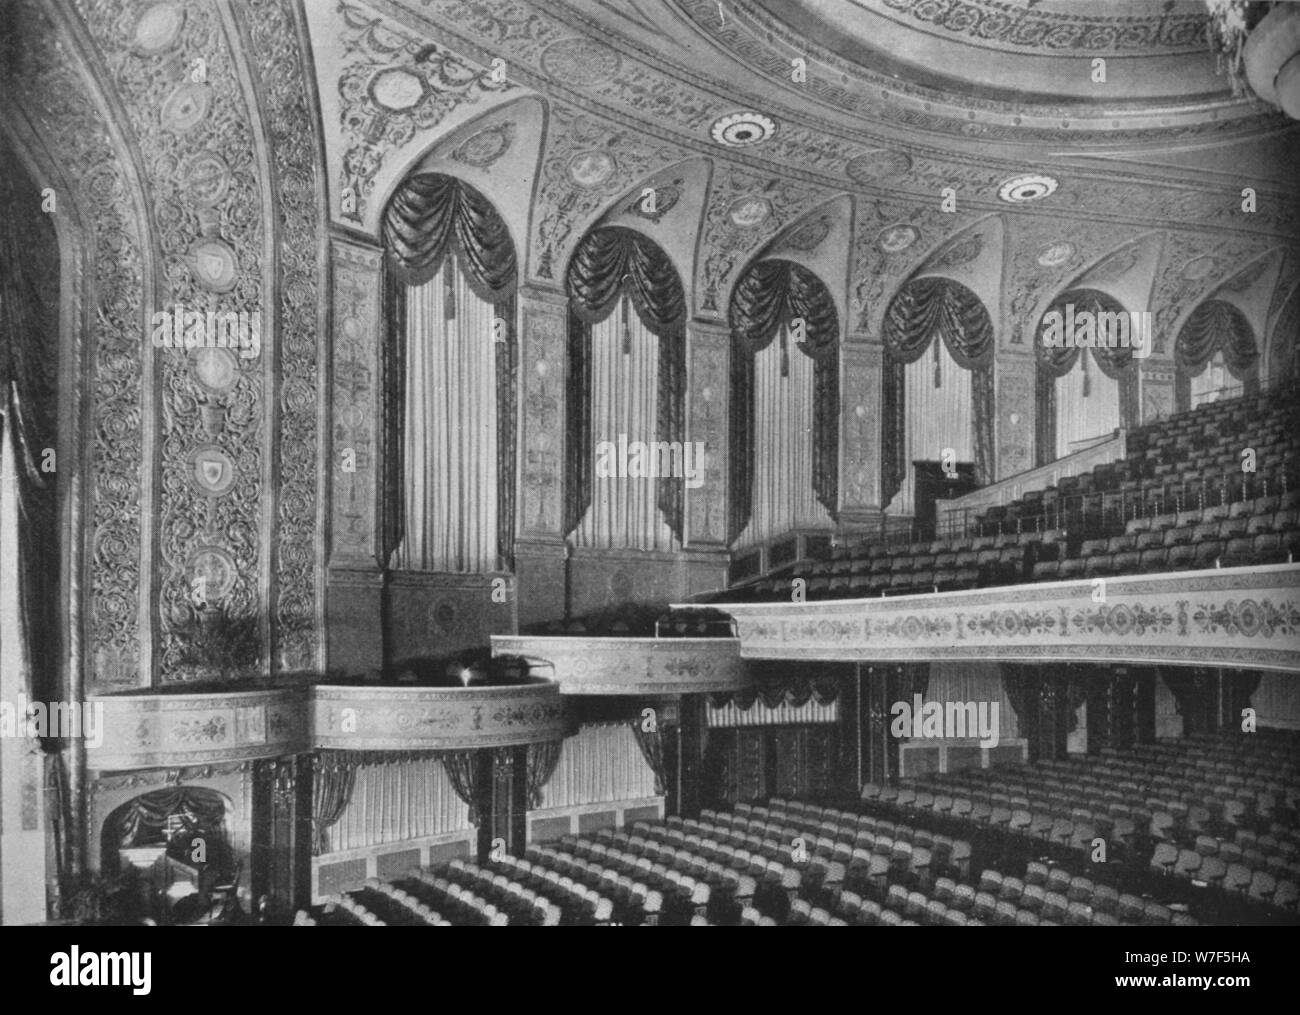 Auditorium di Earle Theatre, Washington DC, 1925. Artista: sconosciuto. Foto Stock